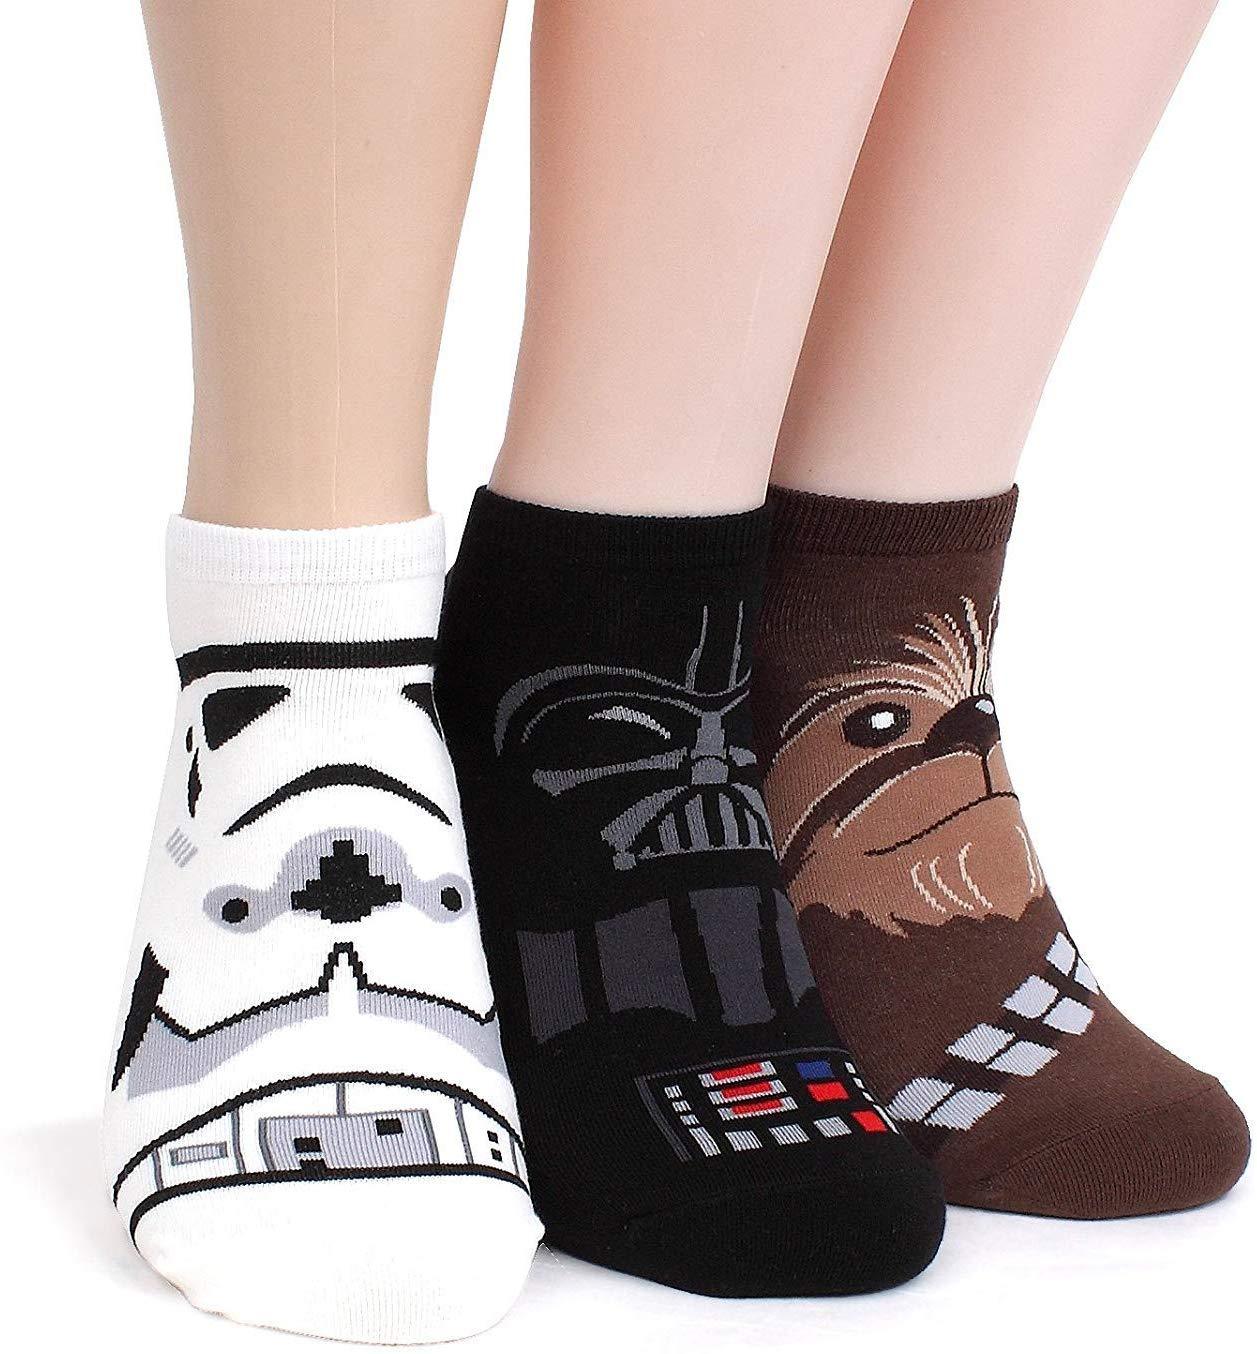 Star Wars Socks - oddgifts.com